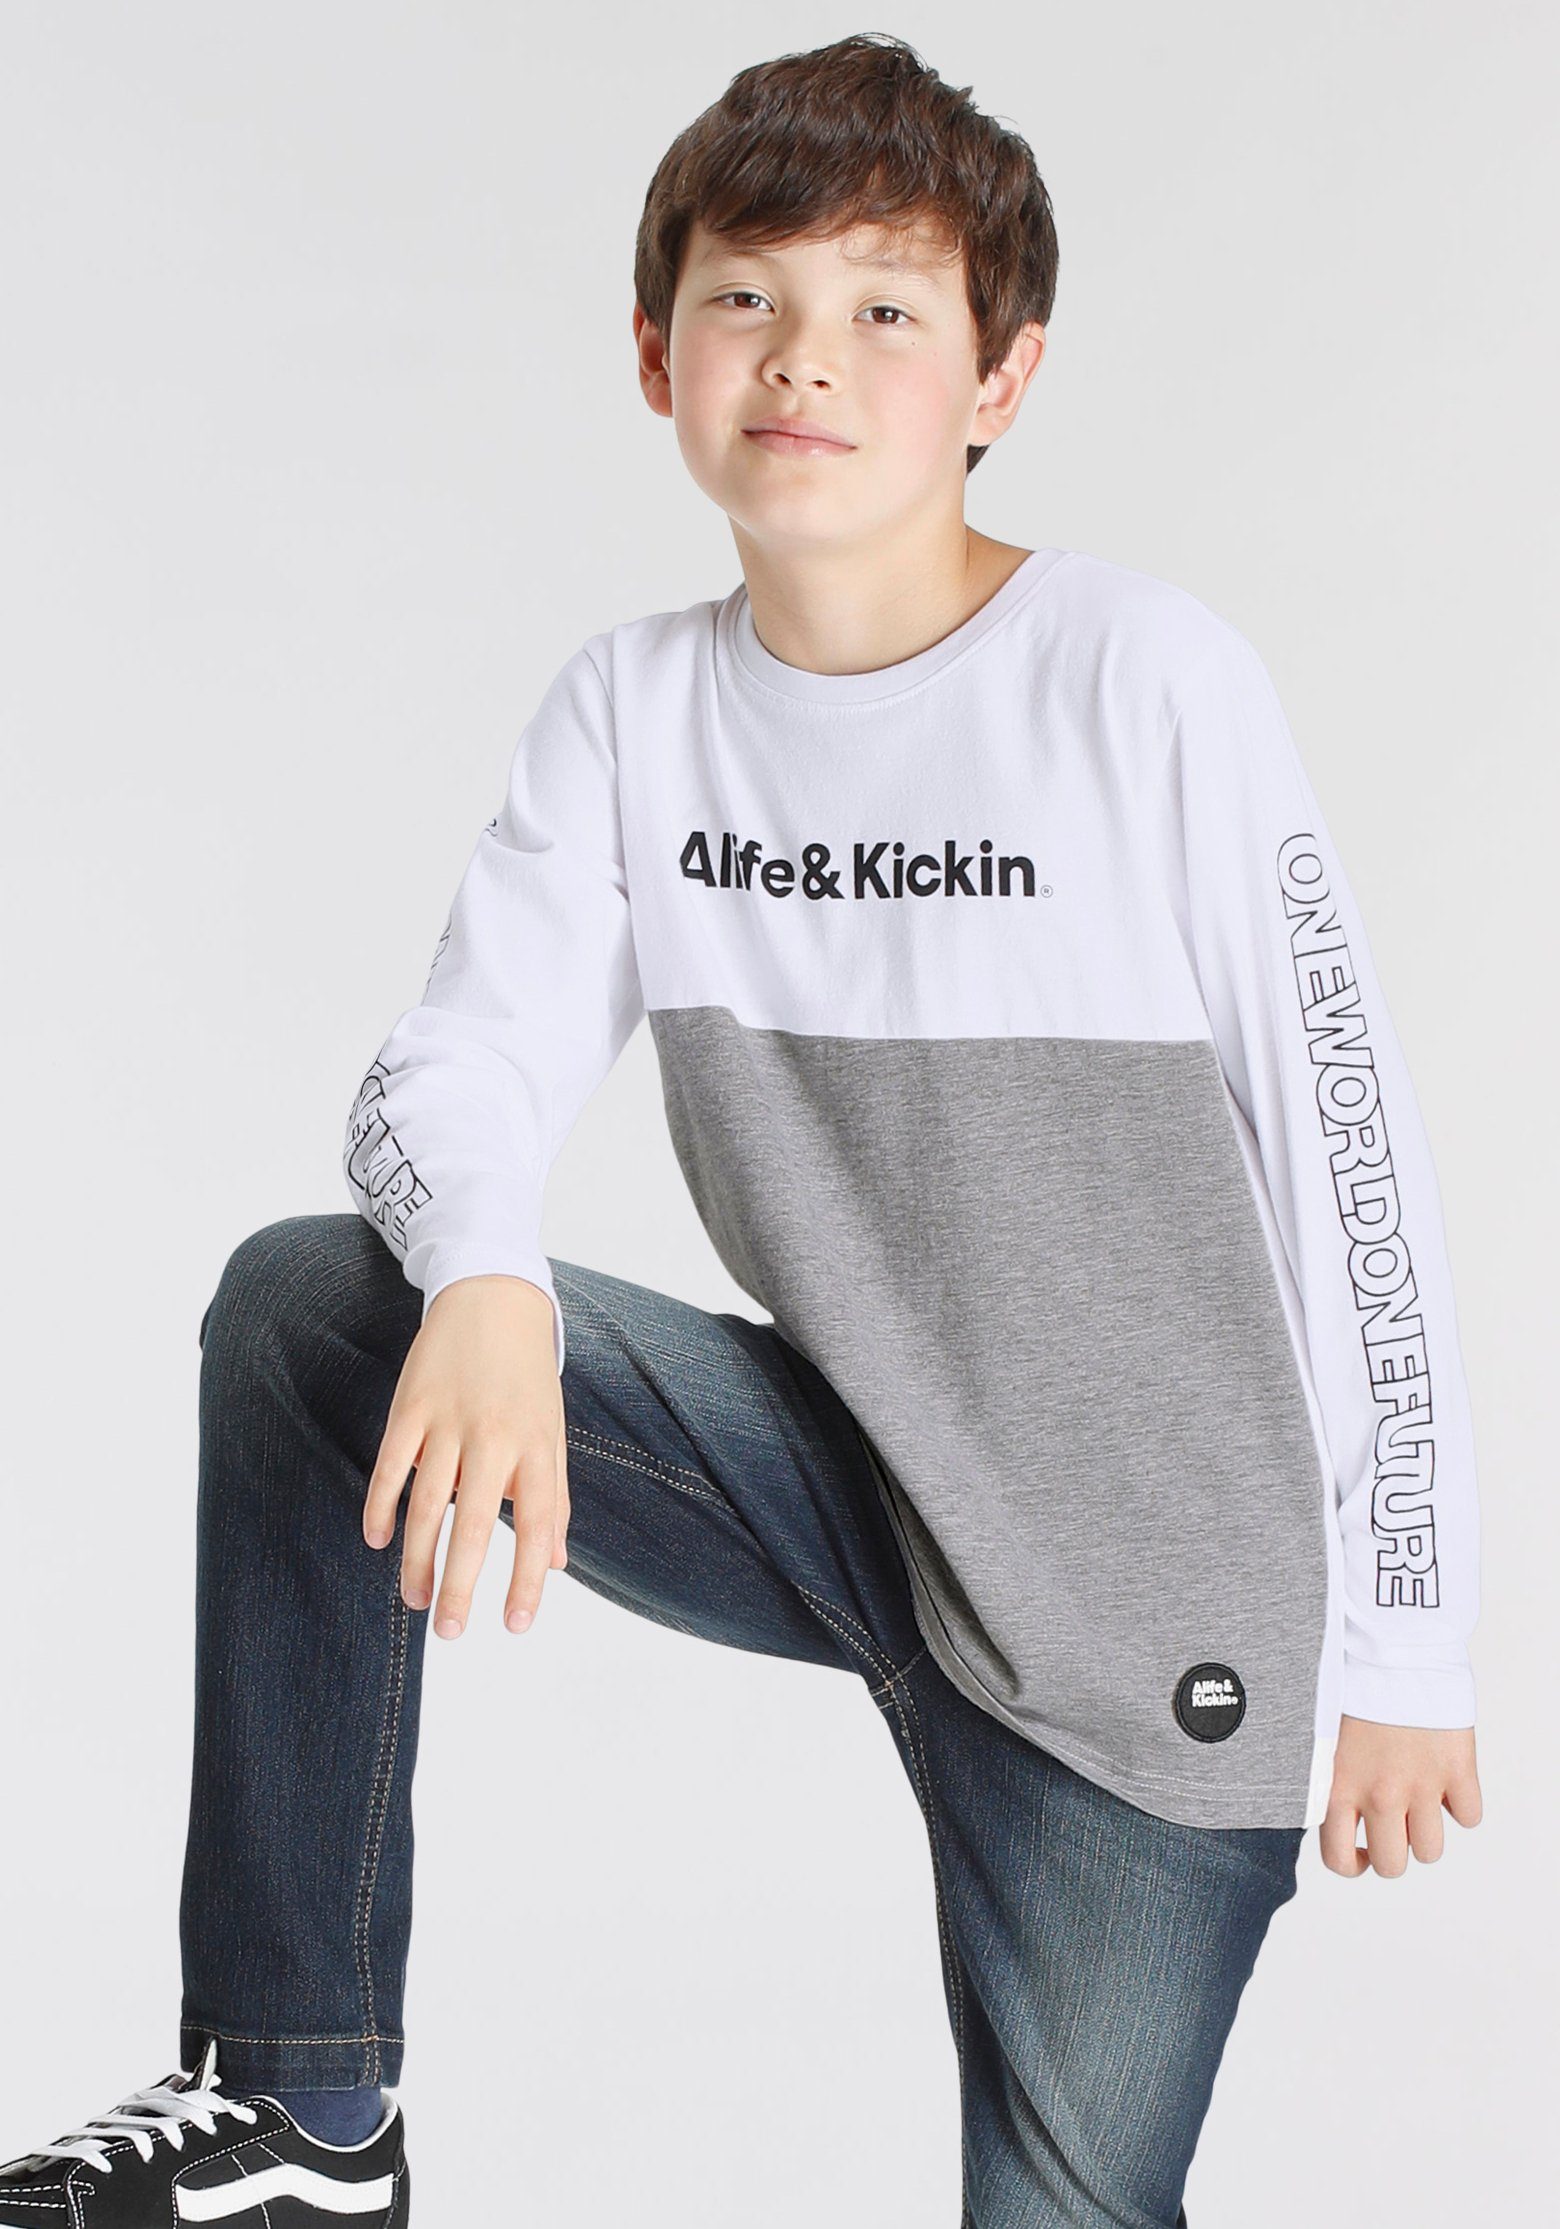 Alife & Kickin Langarmshirt Colorblocking in melierter Qualität, zweifarbig